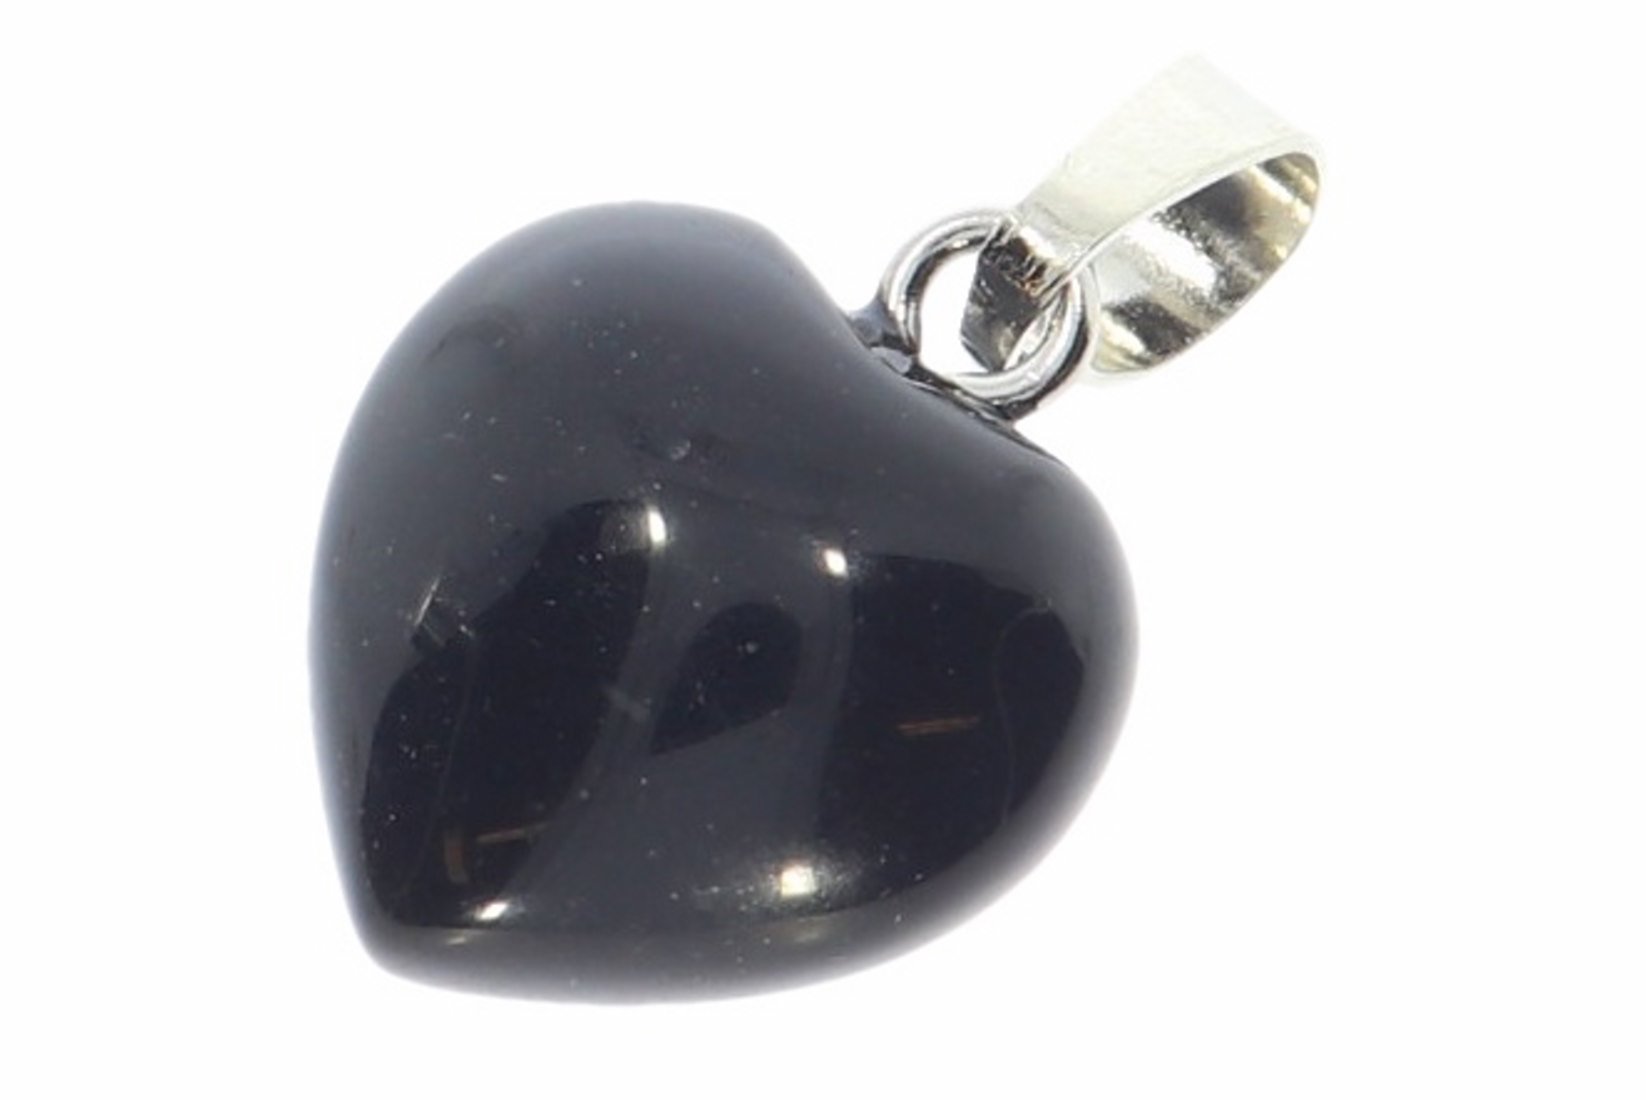 Obsidian schwarz Herz Schmuck Anhänger mit Silber farbene öse 15x15mm - HS703